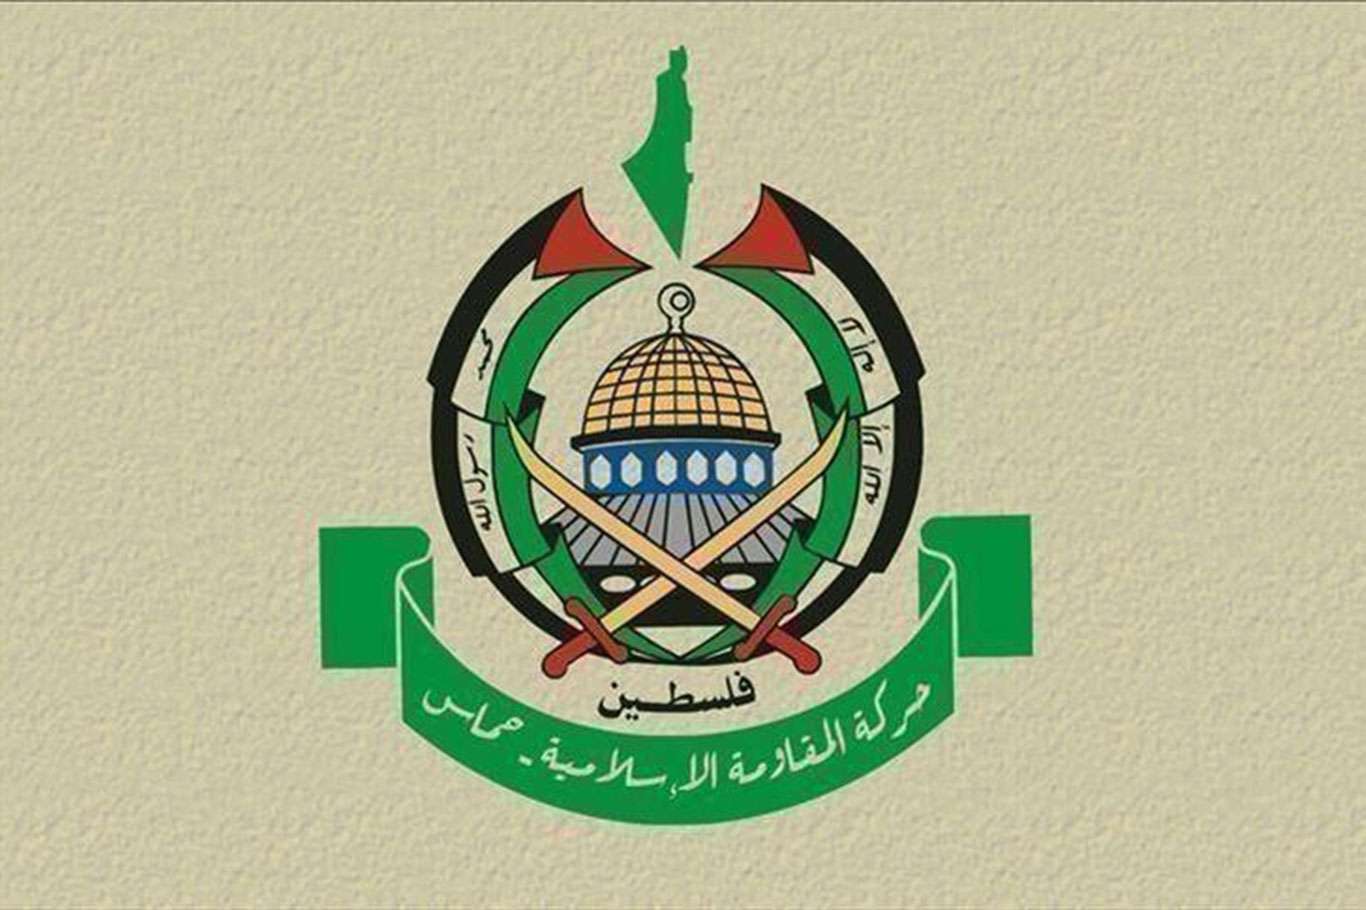 حماس : إطلاق الاحتلال العنان للمستوطنين تعبير عن عجز ونقص يحاول ترقيعه